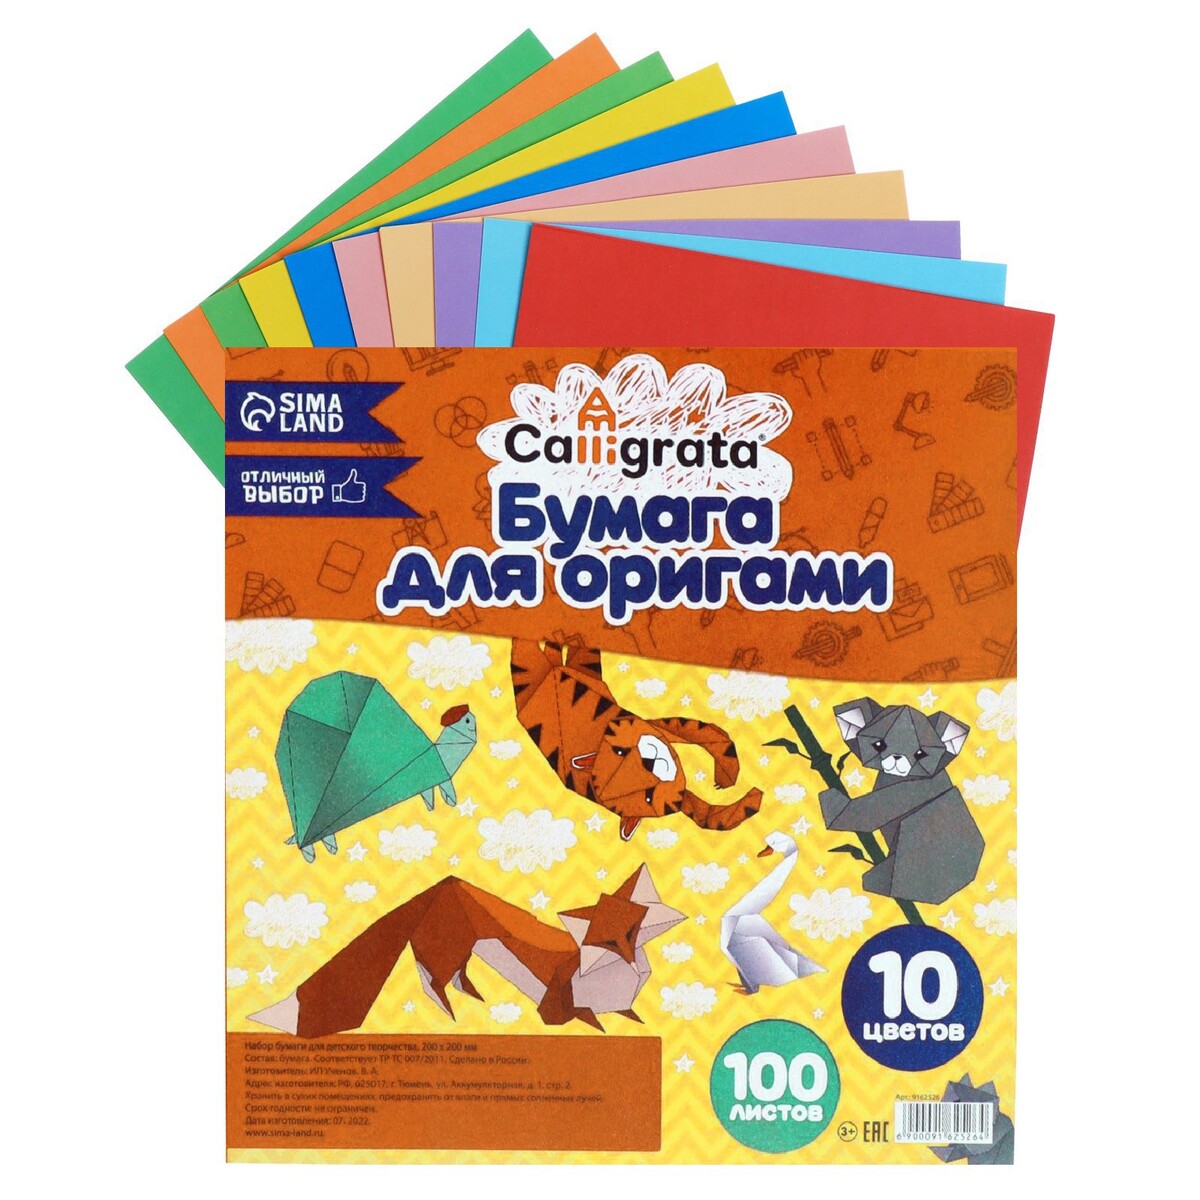 Бумага цветная для оригами и аппликаций 20 х 20 см, 100 листов, 10 цветов, calligrata